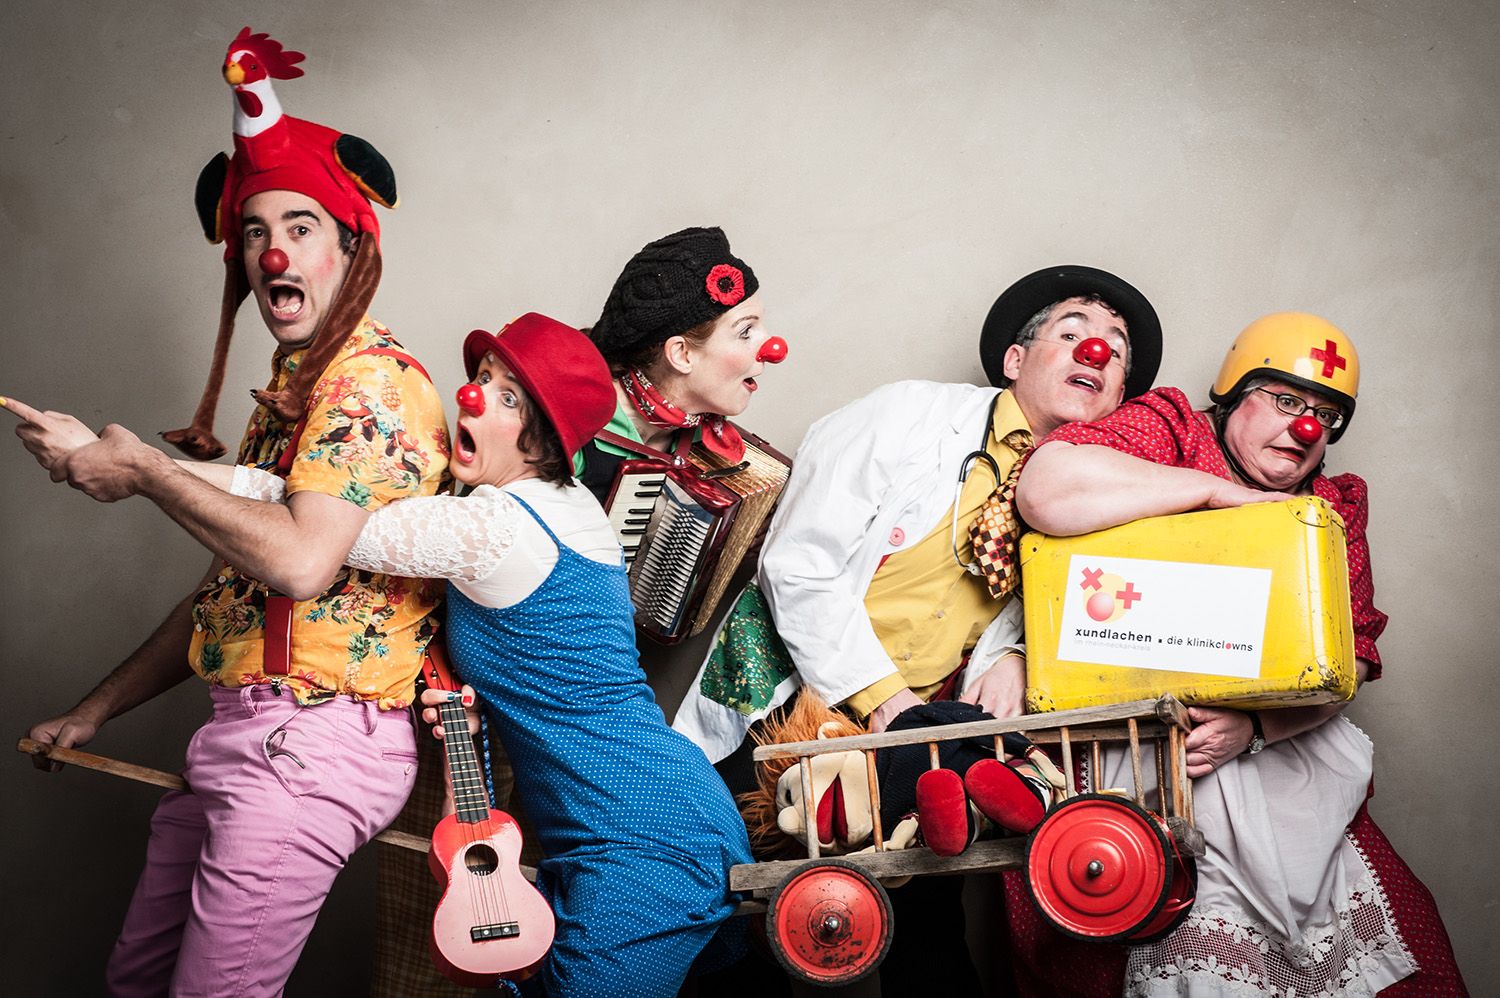 Gruppenfoto von 5 Clowns